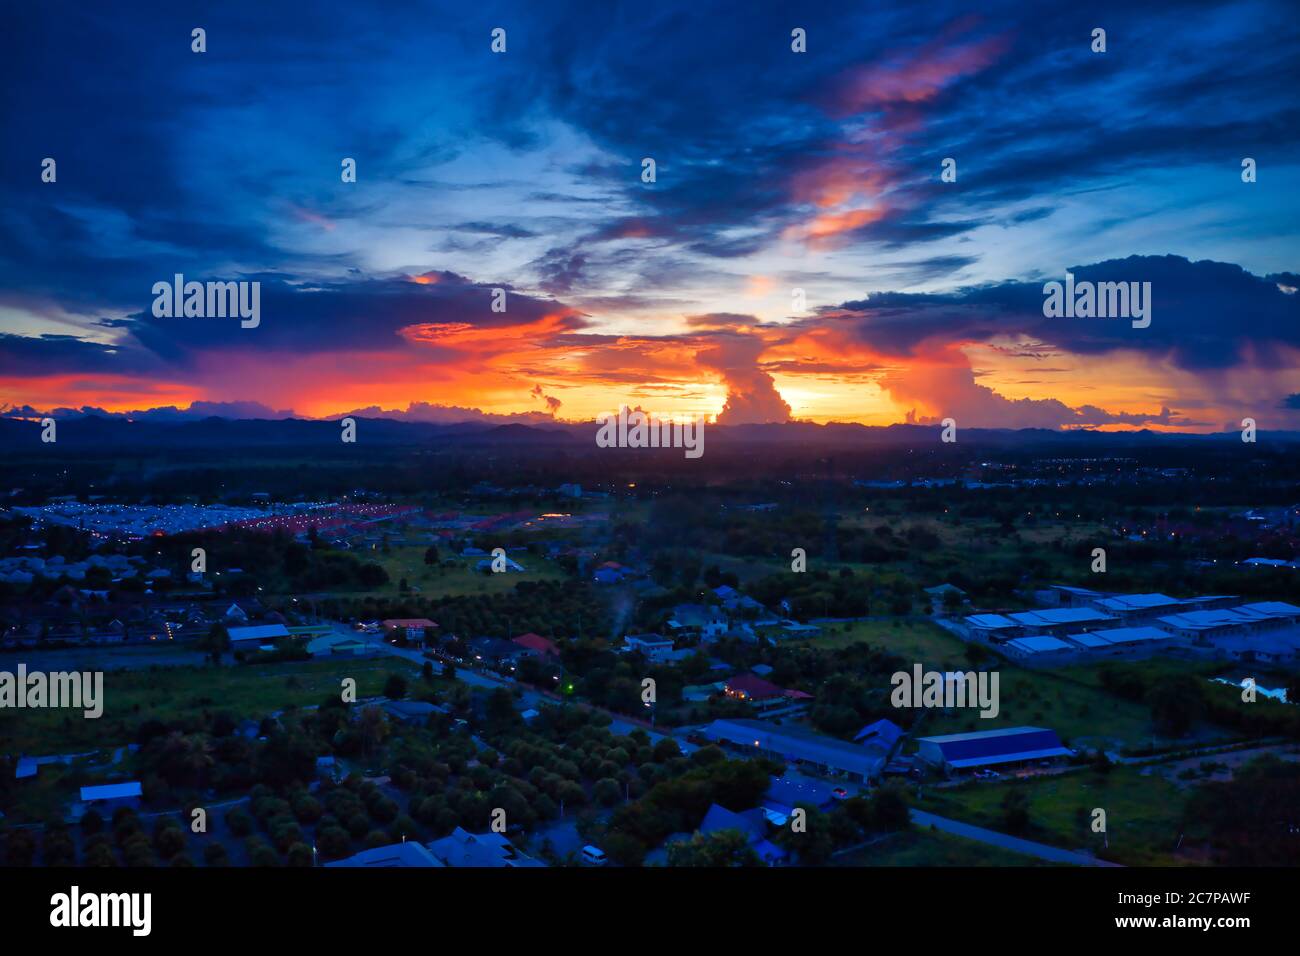 Questa foto unica mostra il paesaggio posteriore di Hua Hin in Thailandia durante un tramonto con un cielo grande. È anche possibile vedere una catena montuosa sul retro. Foto Stock